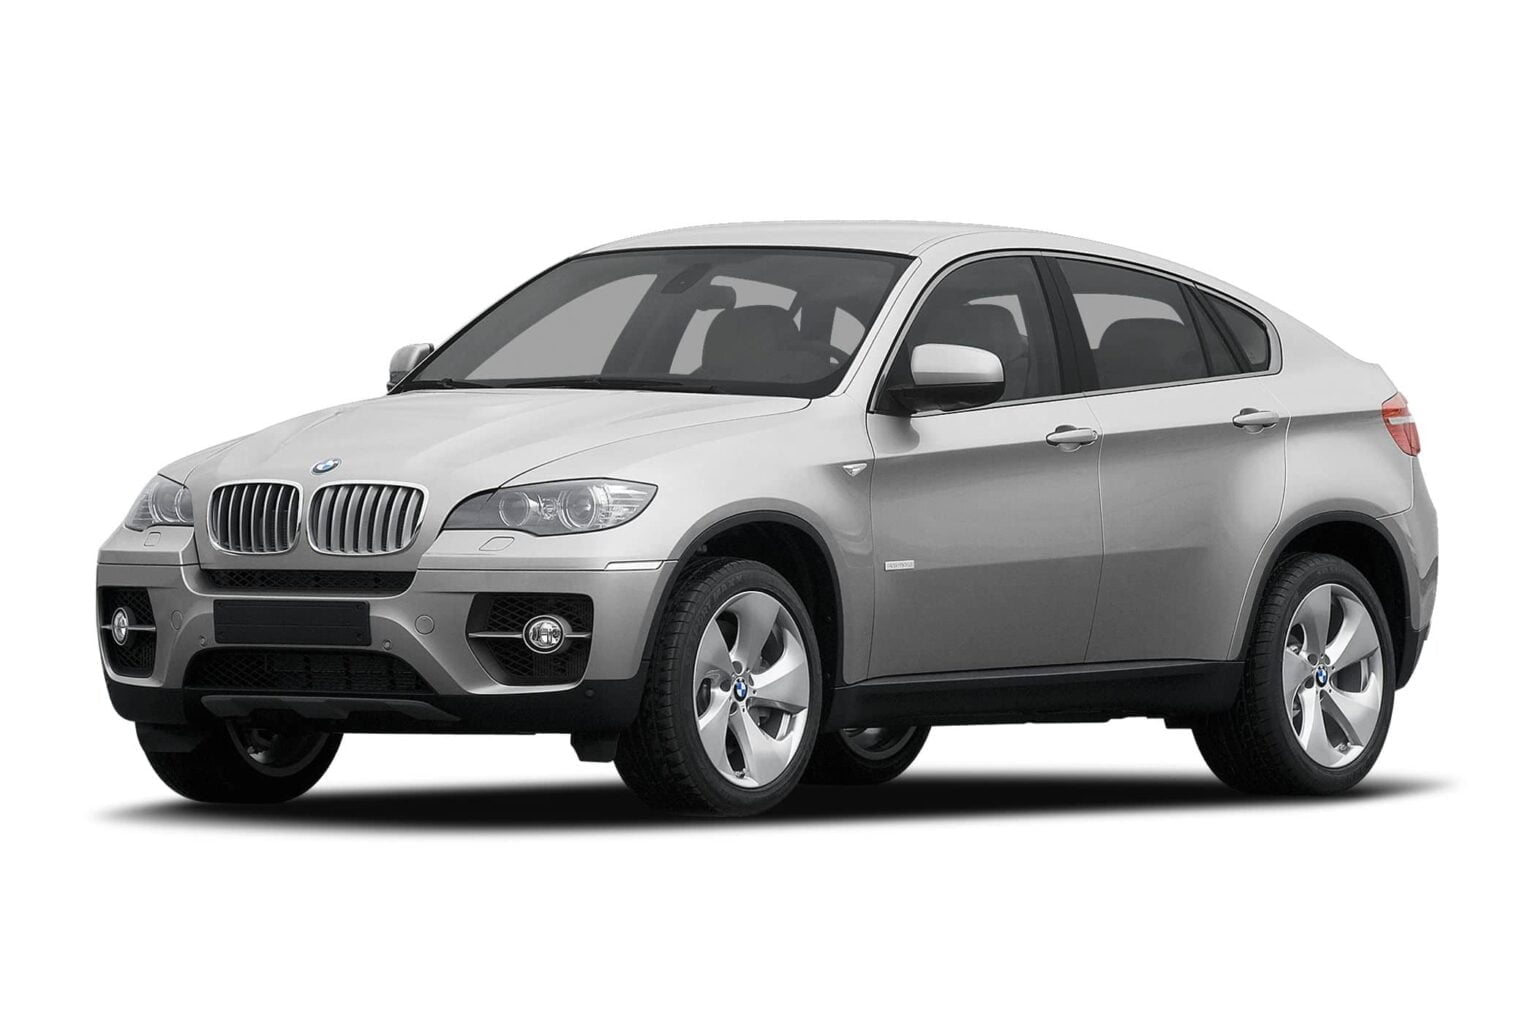 Descargar Catalogo de Partes BMW ActiveHybrid X6 2010-2011 DESCARGAR GRATIS 🏅 tiene todas las Refacciones Autopartes Eléctricas Colisión Motor Frenos Carrocería